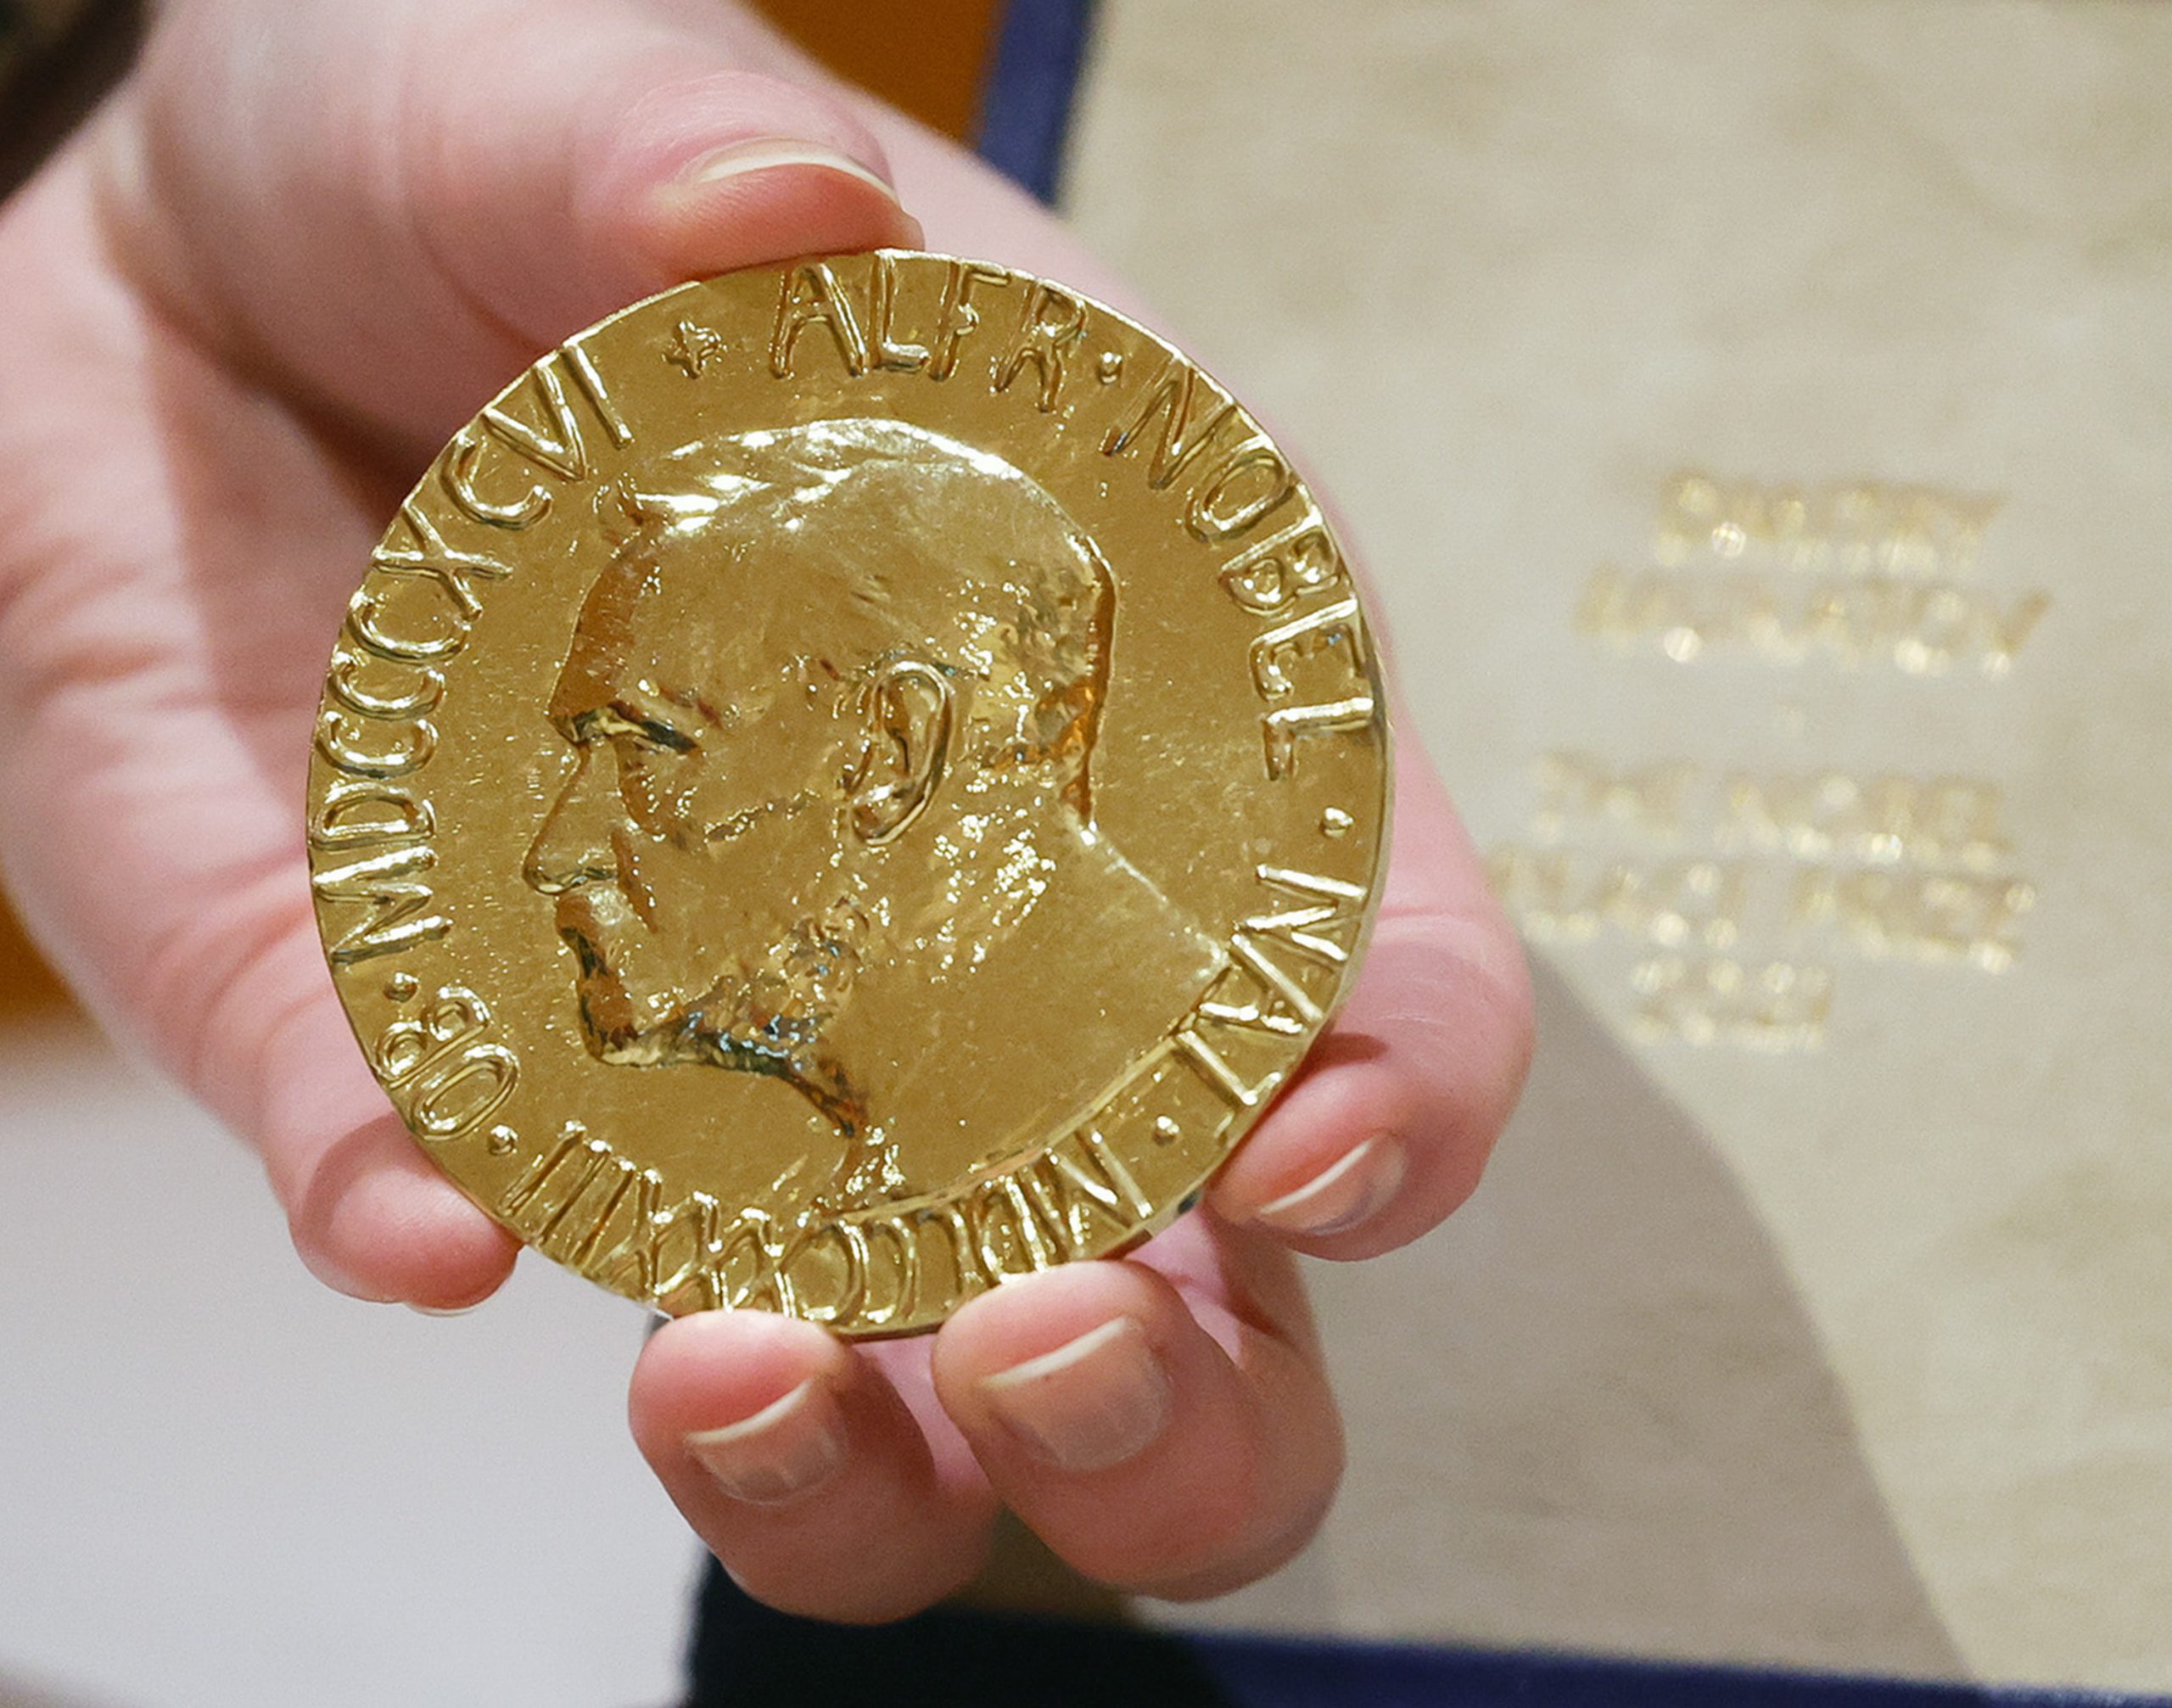  俄诺贝尔和平奖得主奖章拍得逾1亿美元 全捐出助乌克兰儿童